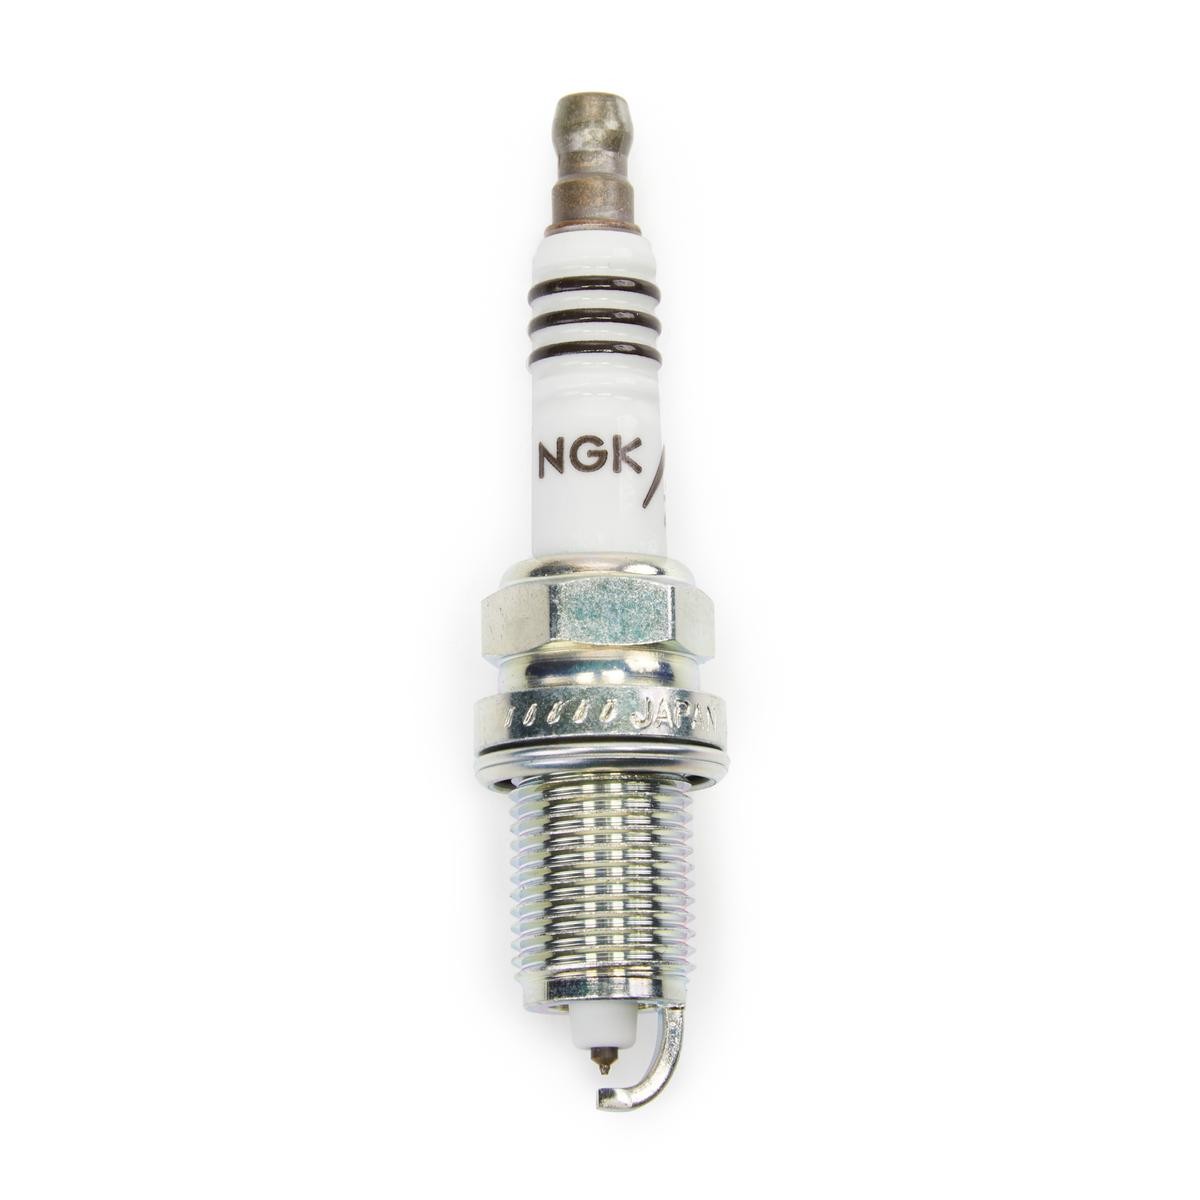 NGK Spark plug iridium and platinum Fabia Mk2 new 6441